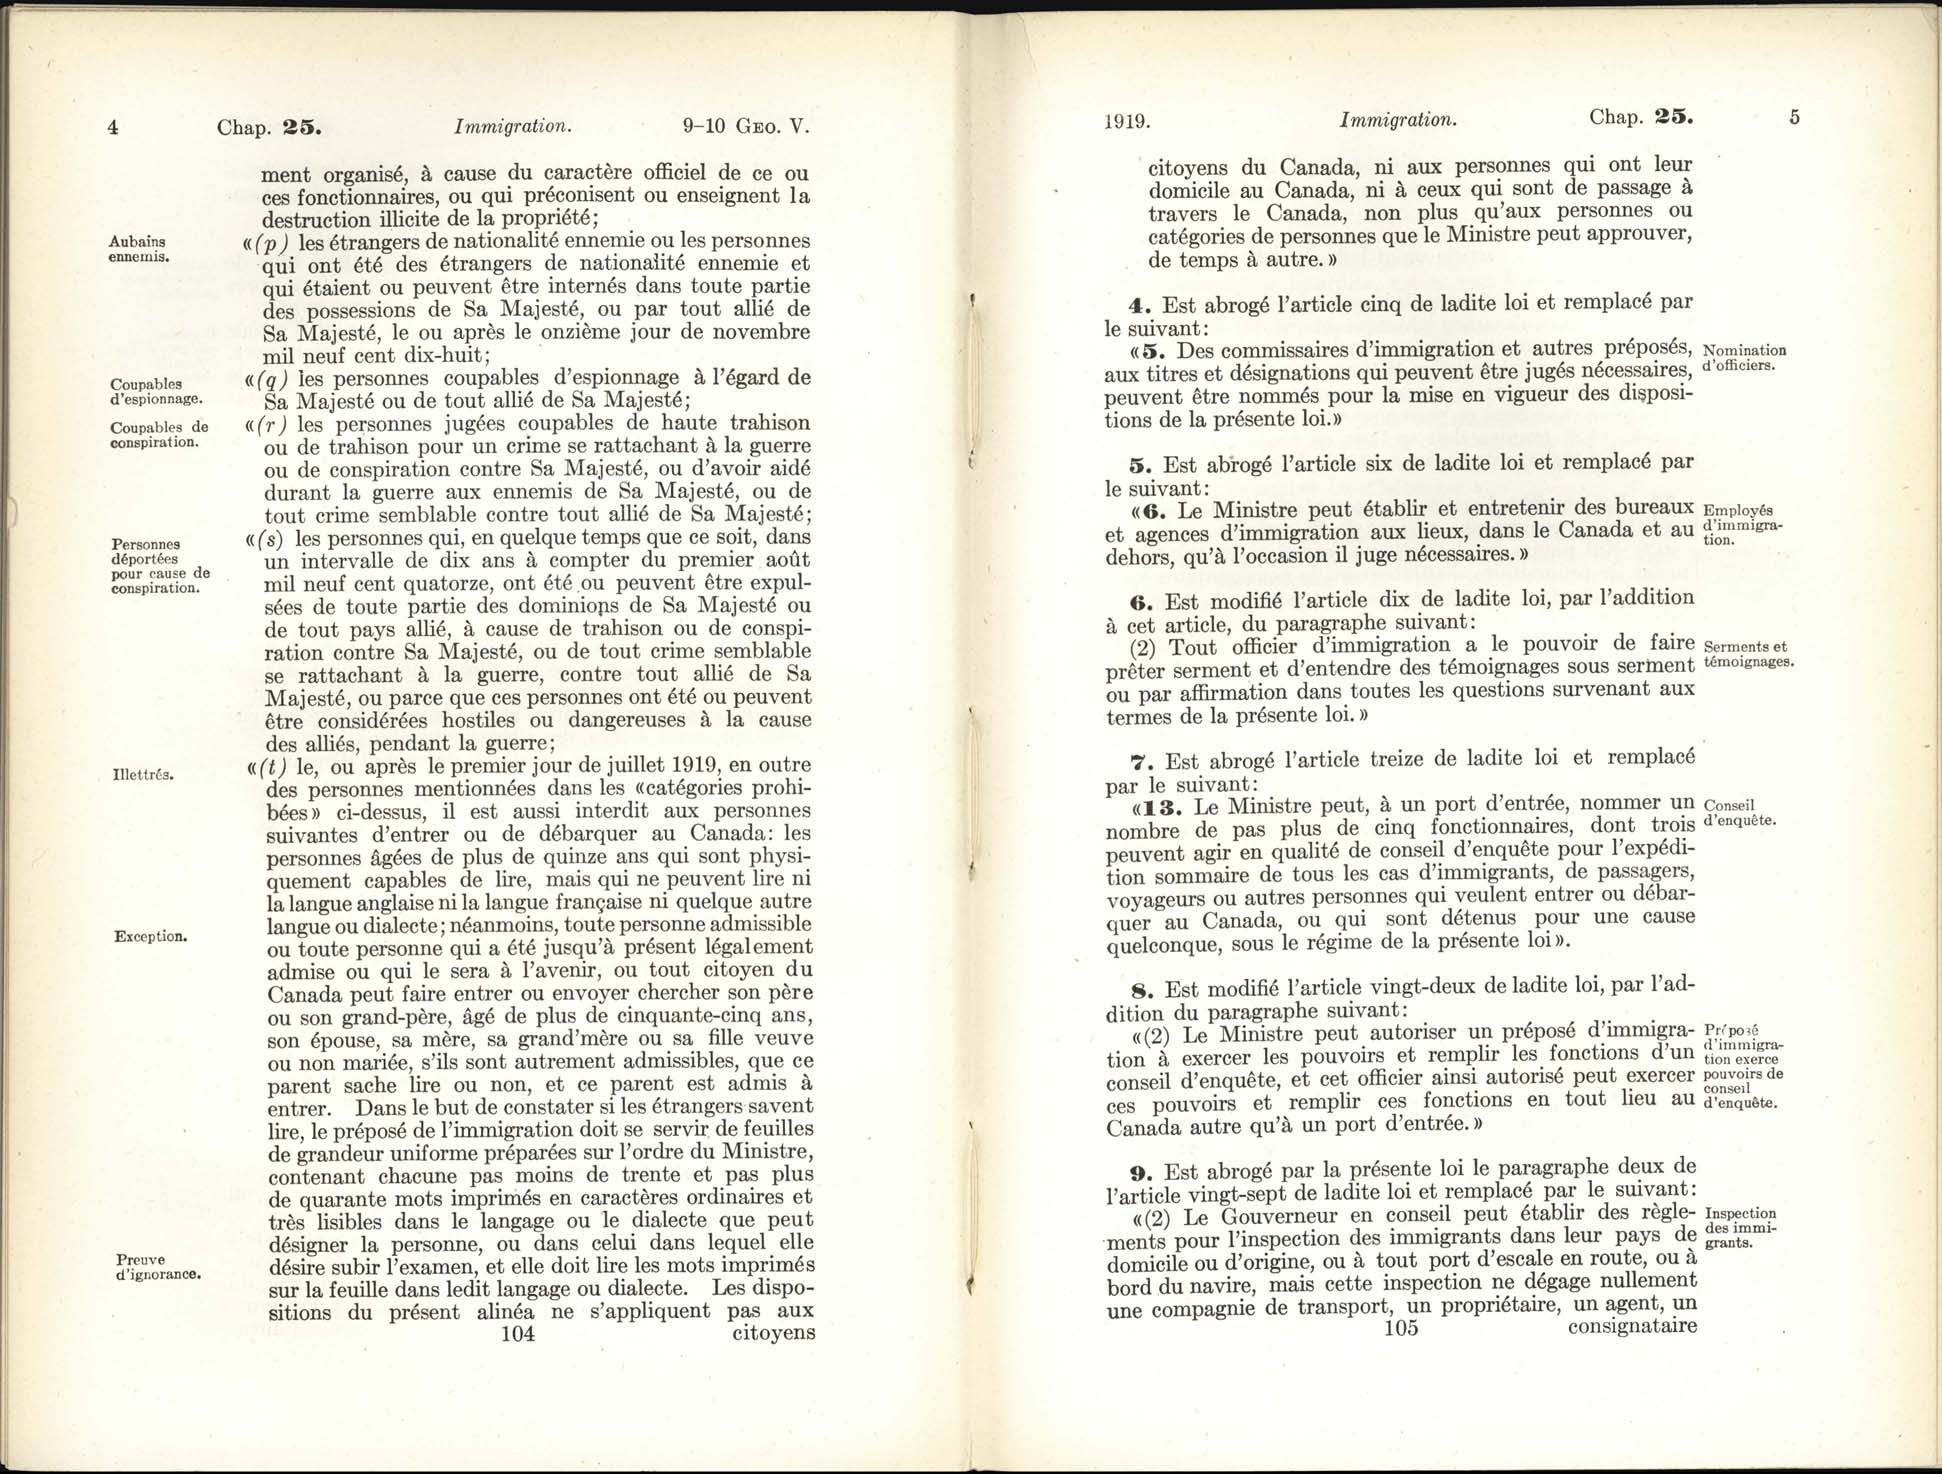 Page 104, 105 Loi de l’immigration amendement, 1919